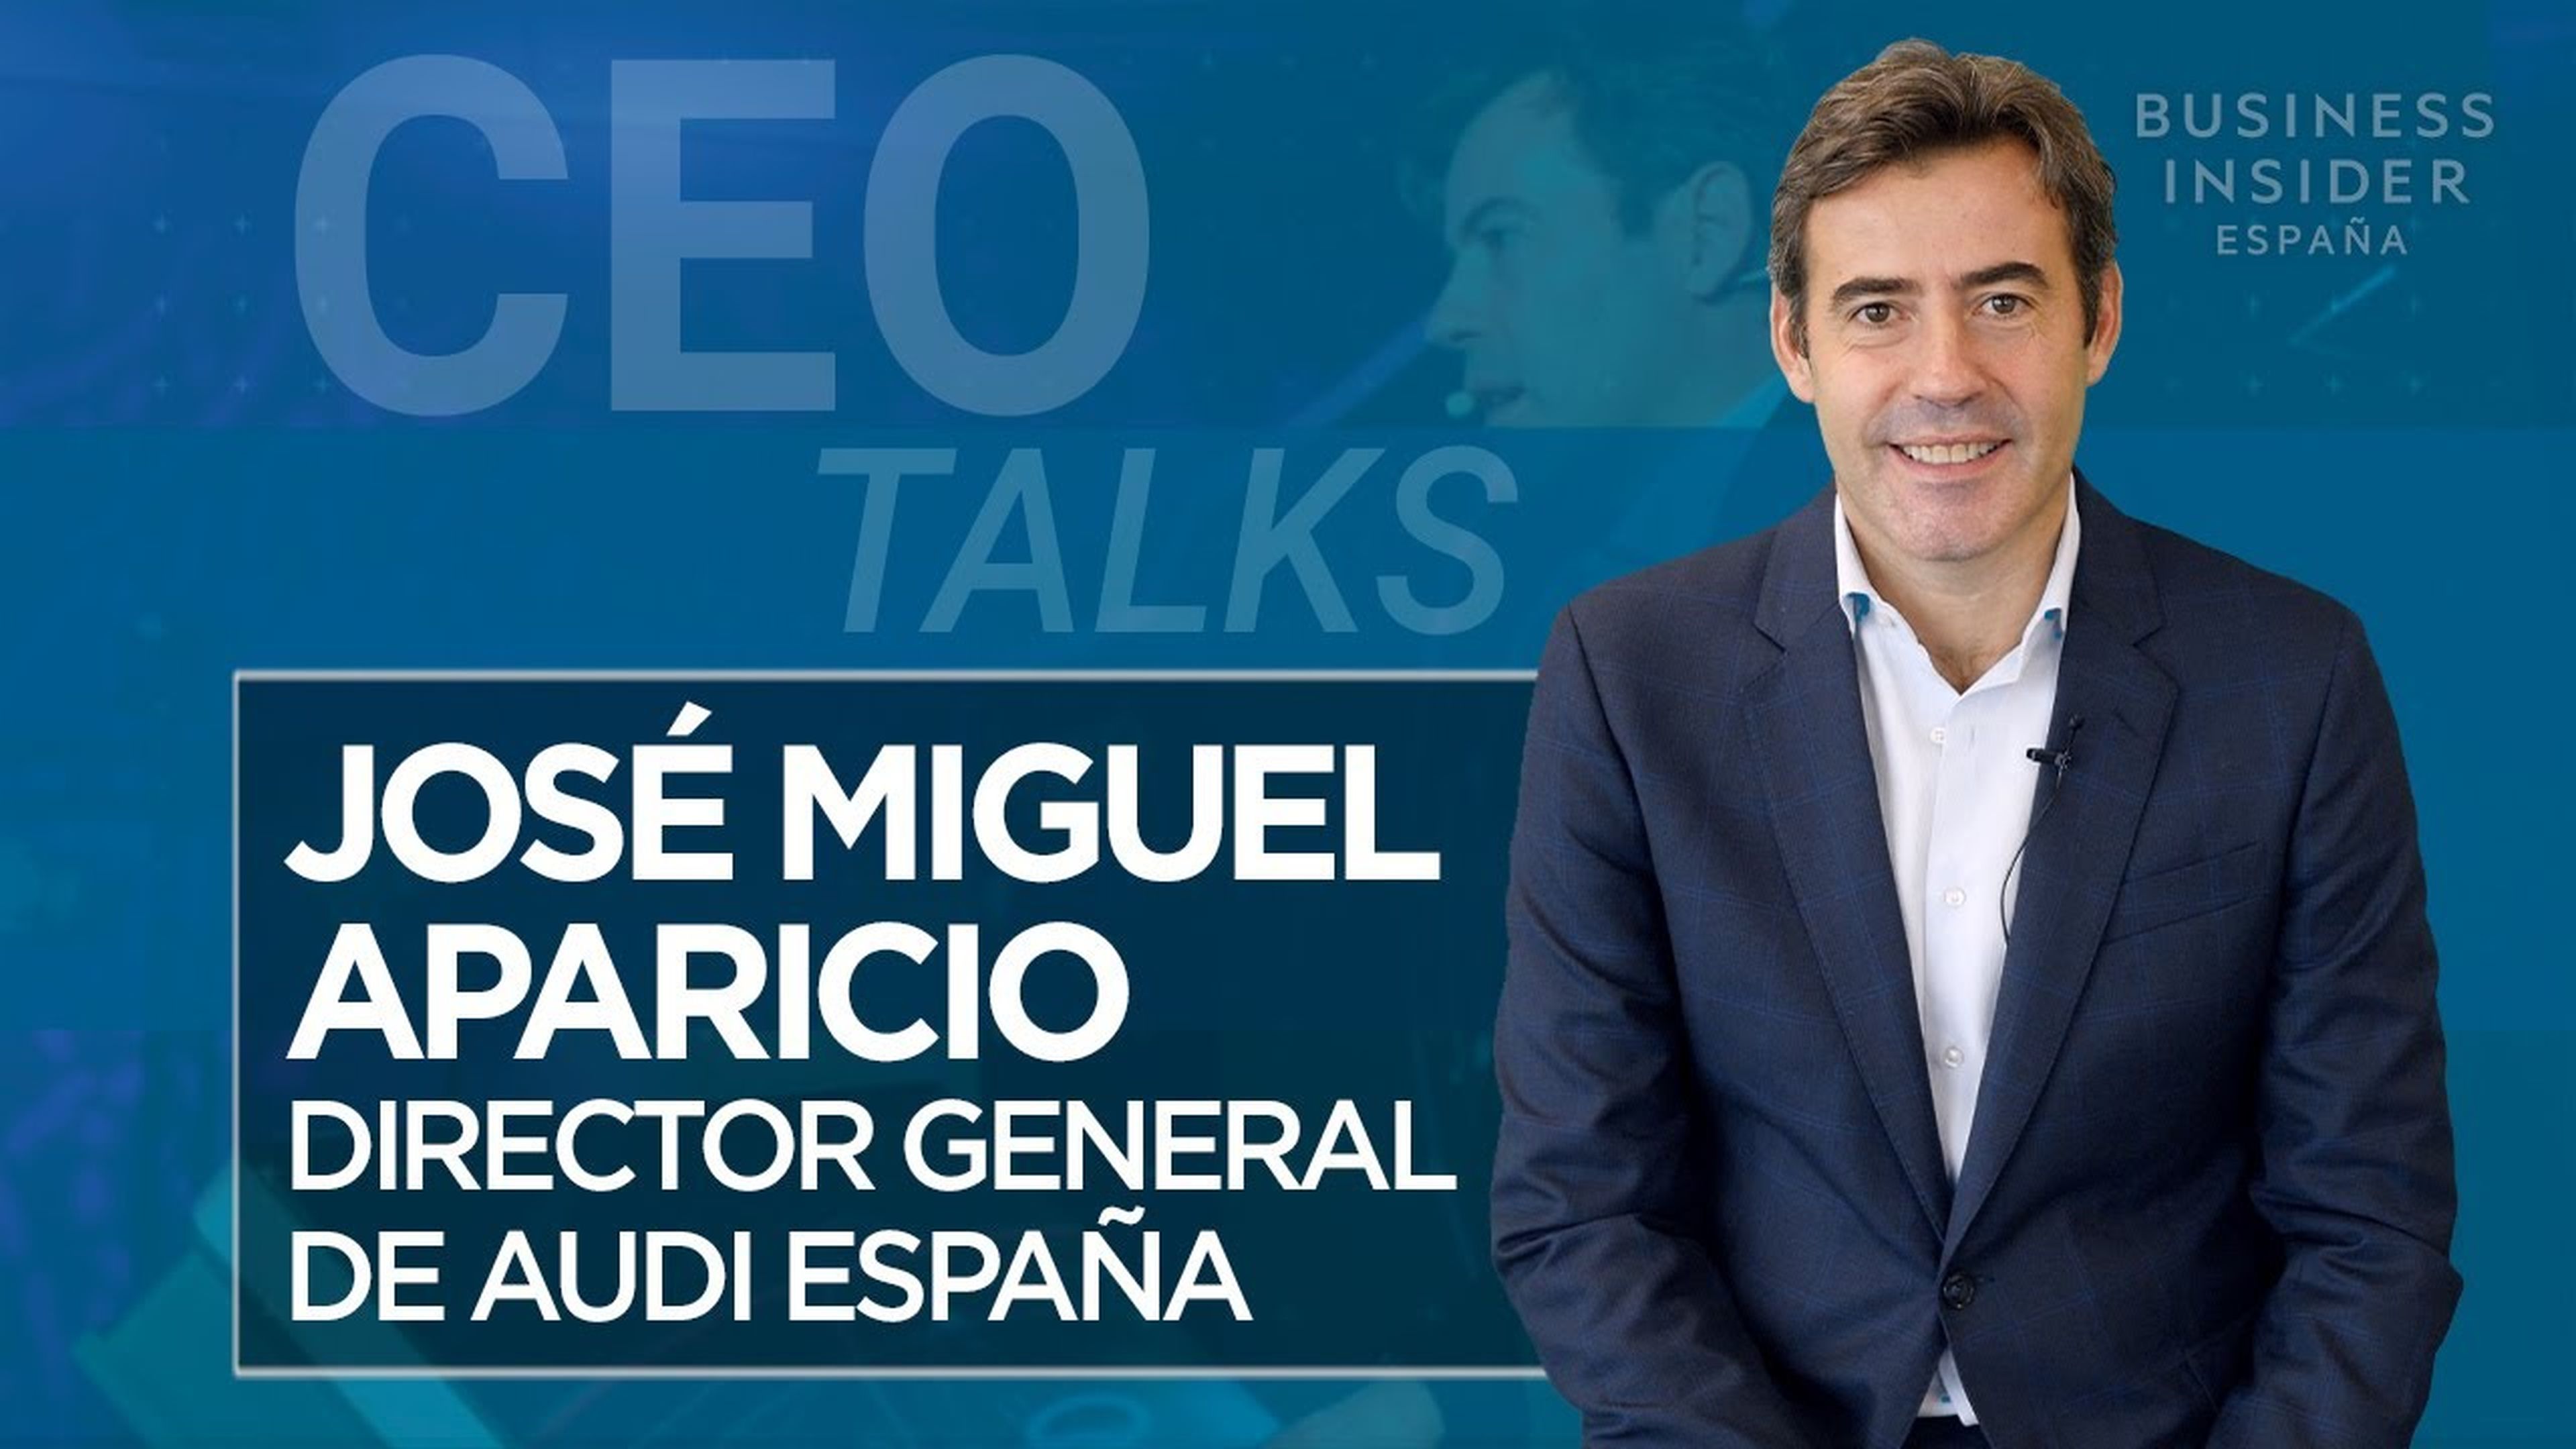 CEO Talks: José Miguel Aparicio, CEO de Audi España